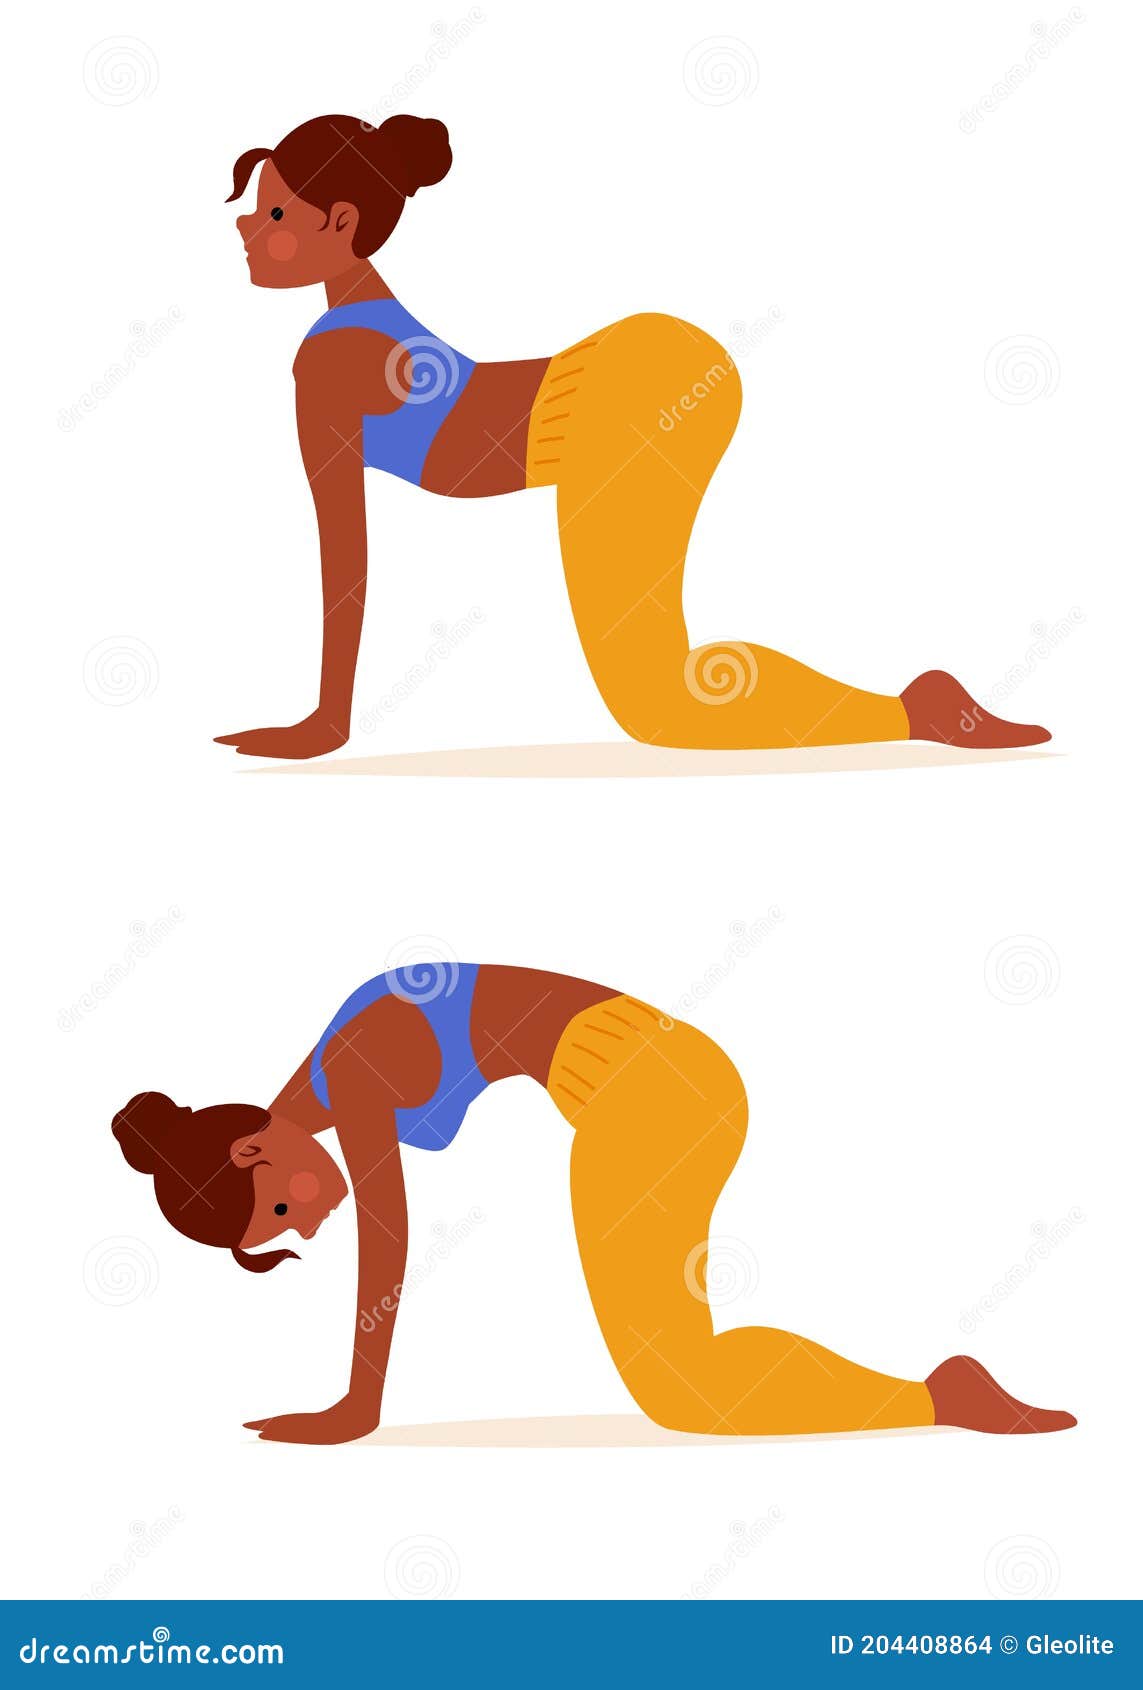 https://thumbs.dreamstime.com/z/mulher-em-vaca-yoga-cat-d%C3%A1-dois-passos-para-esticar-as-costas-e-promover-flexibilidade-espinhal-ilustra%C3%A7%C3%A3o-sobre-exerc%C3%ADcio-204408864.jpg